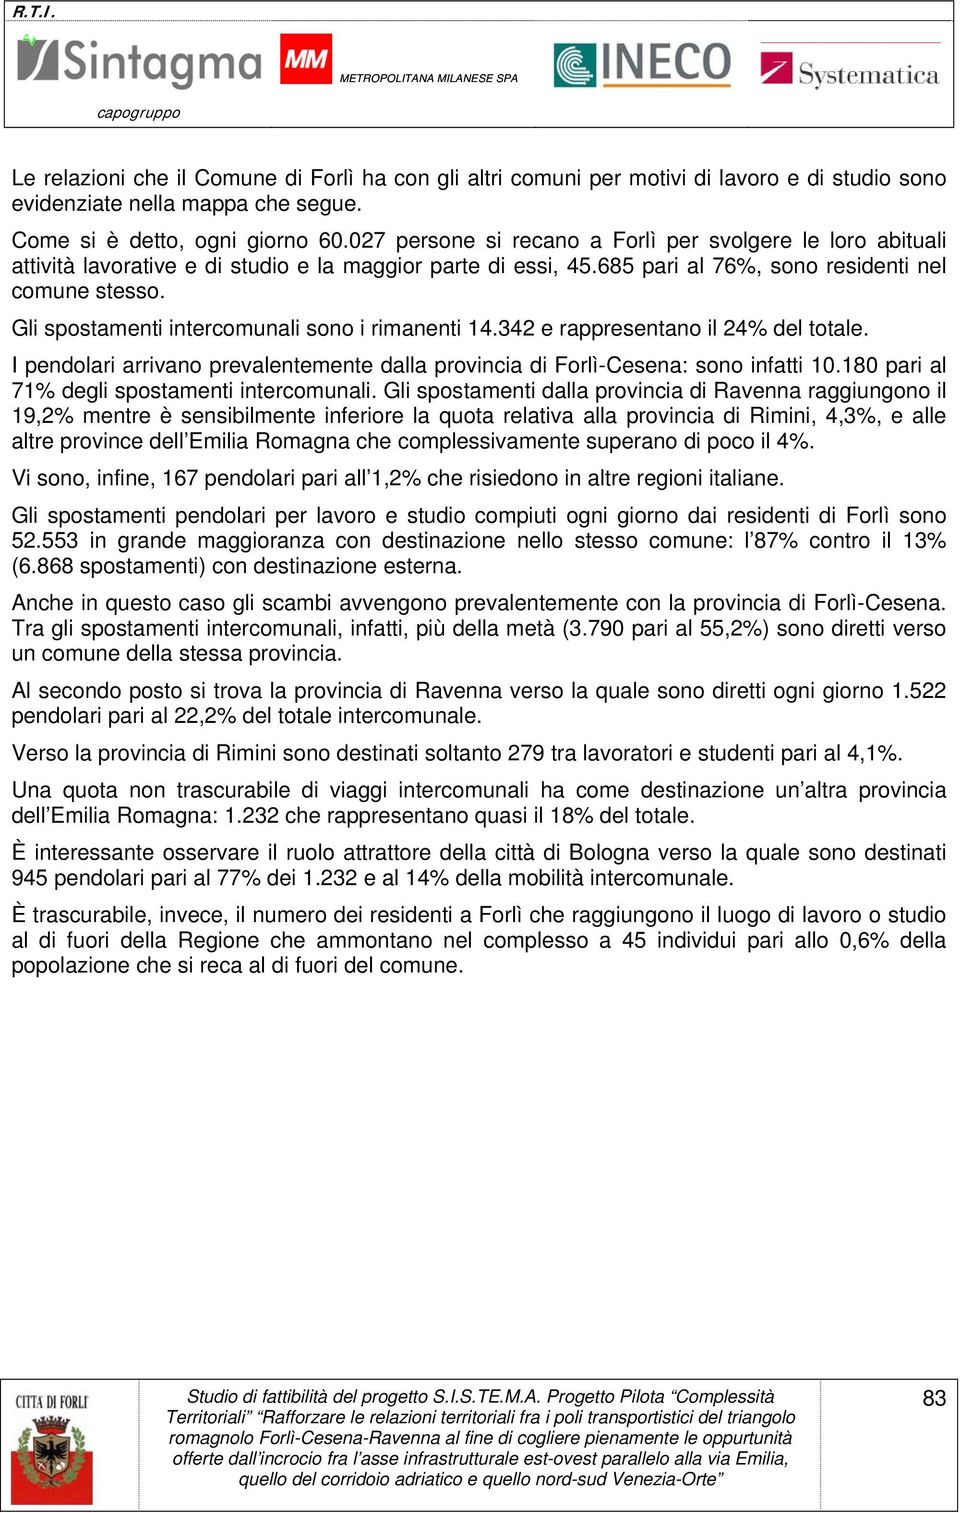 Gli spostamenti intercomunali sono i rimanenti 14.342 e rappresentano il 24% del totale. I pendolari arrivano prevalentemente dalla provincia di Forlì-Cesena: sono infatti 10.